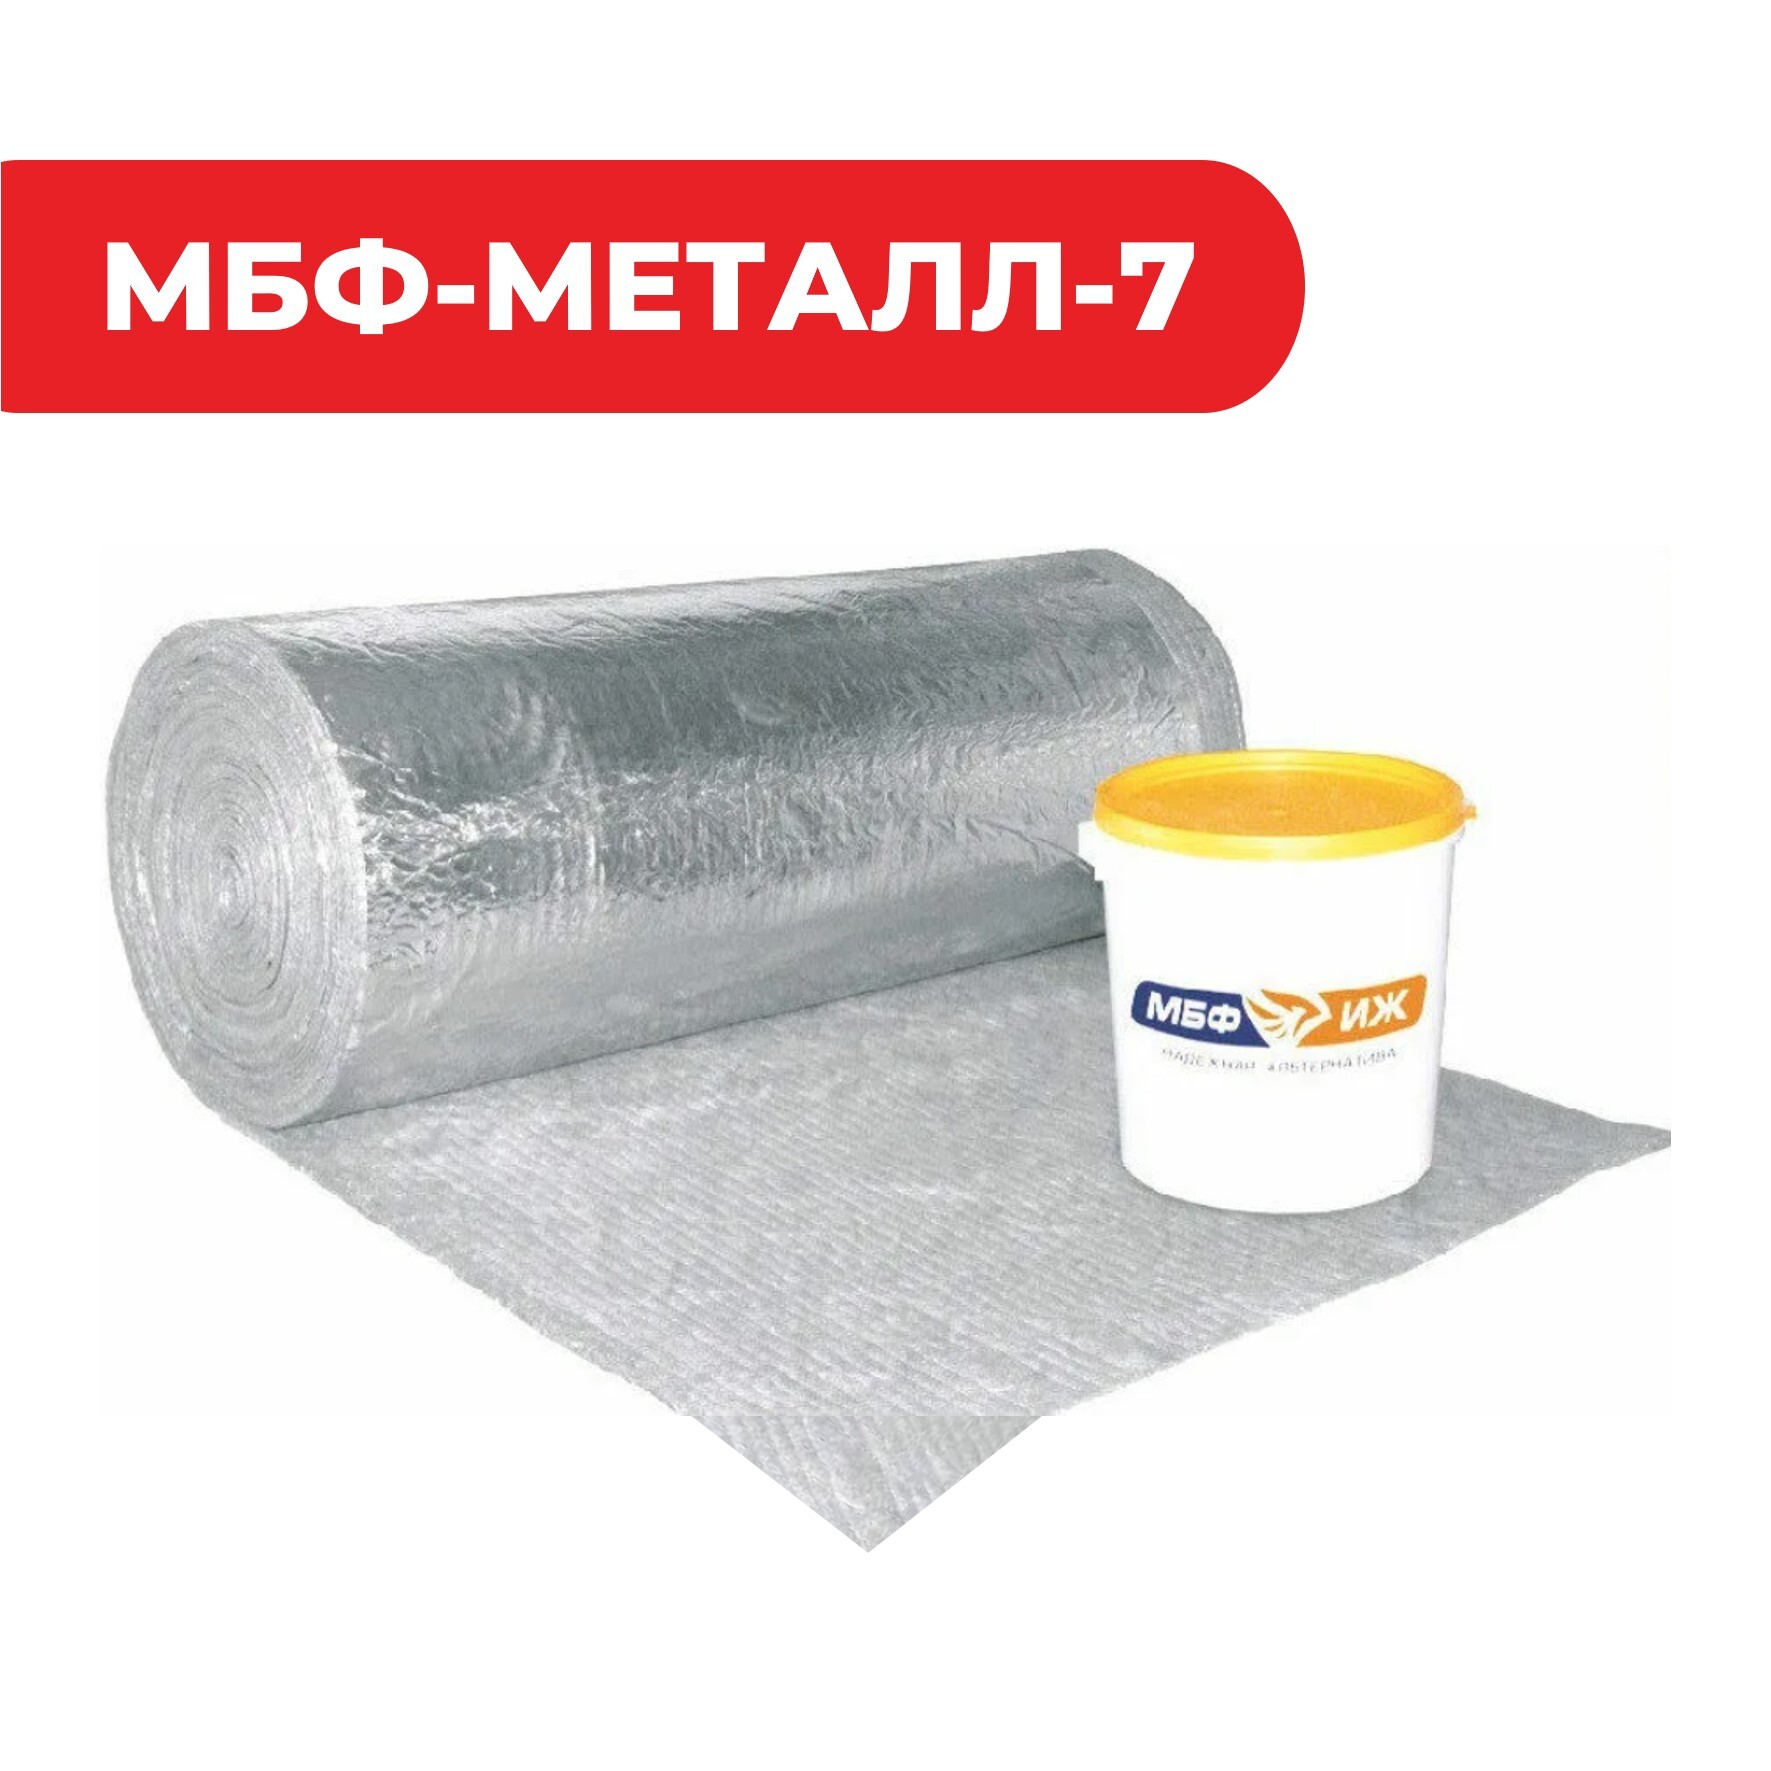 Конструктивная система огнезащиты металлоконструкций «МБФ-МЕТАЛЛ-7»